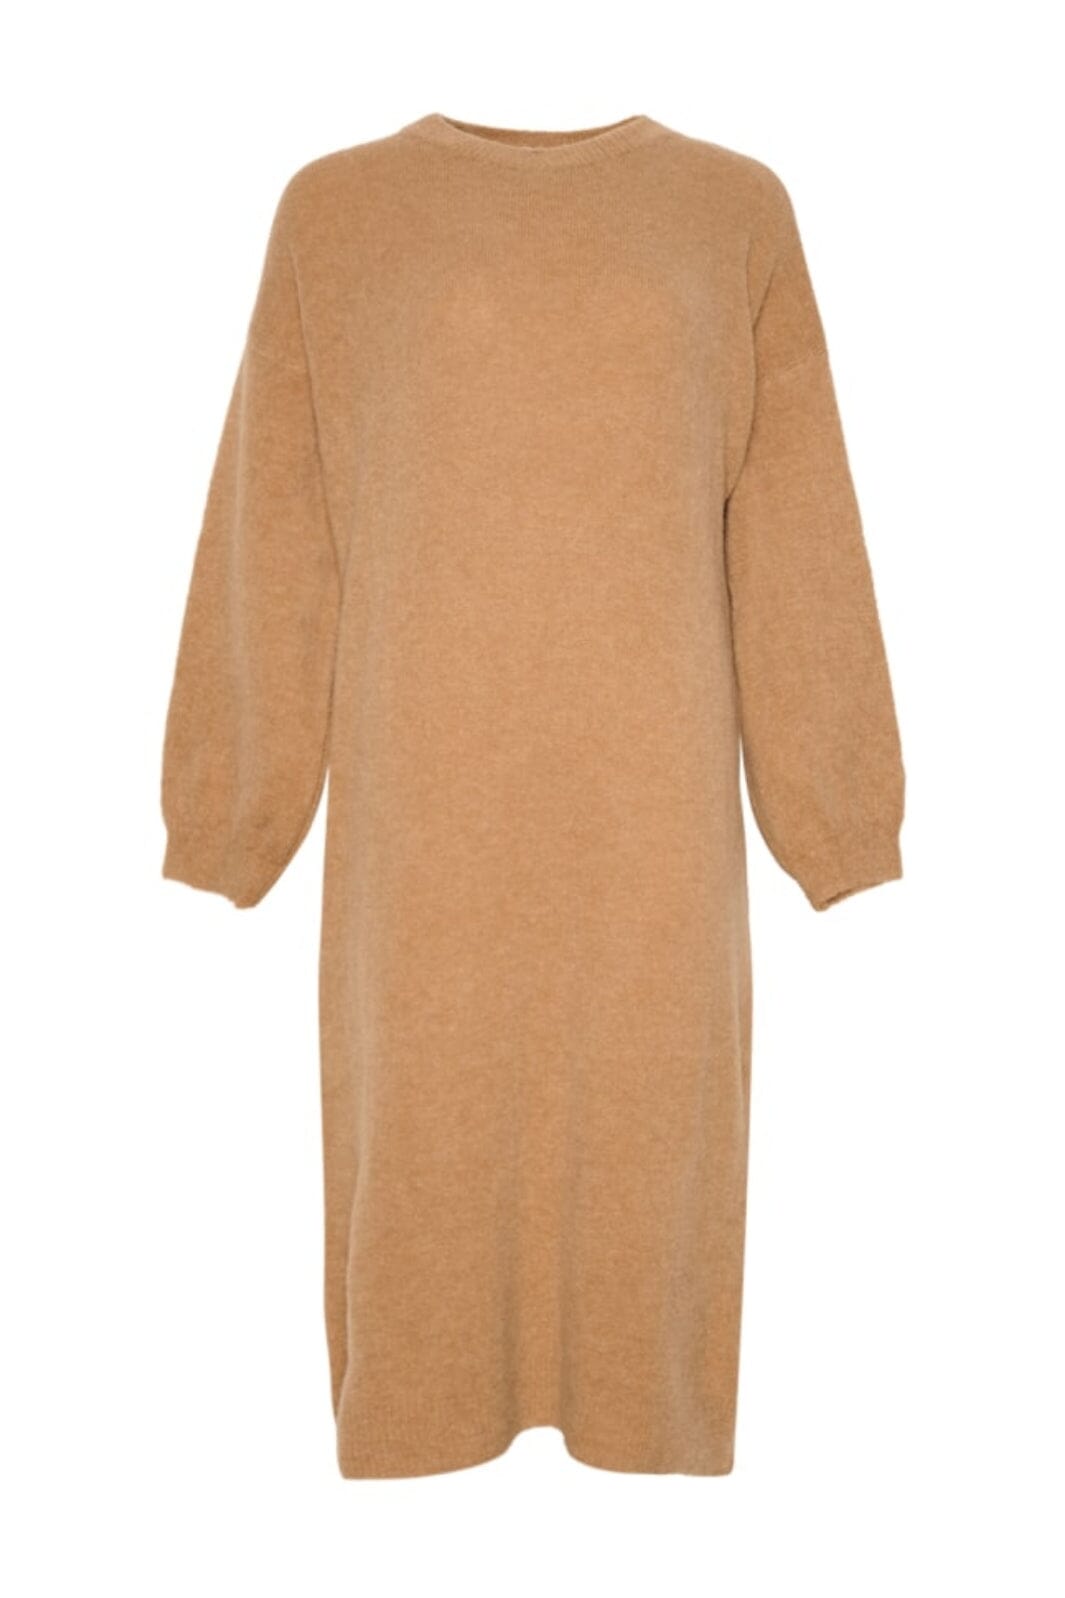 Noella - Penn Knit Dress - Camel 